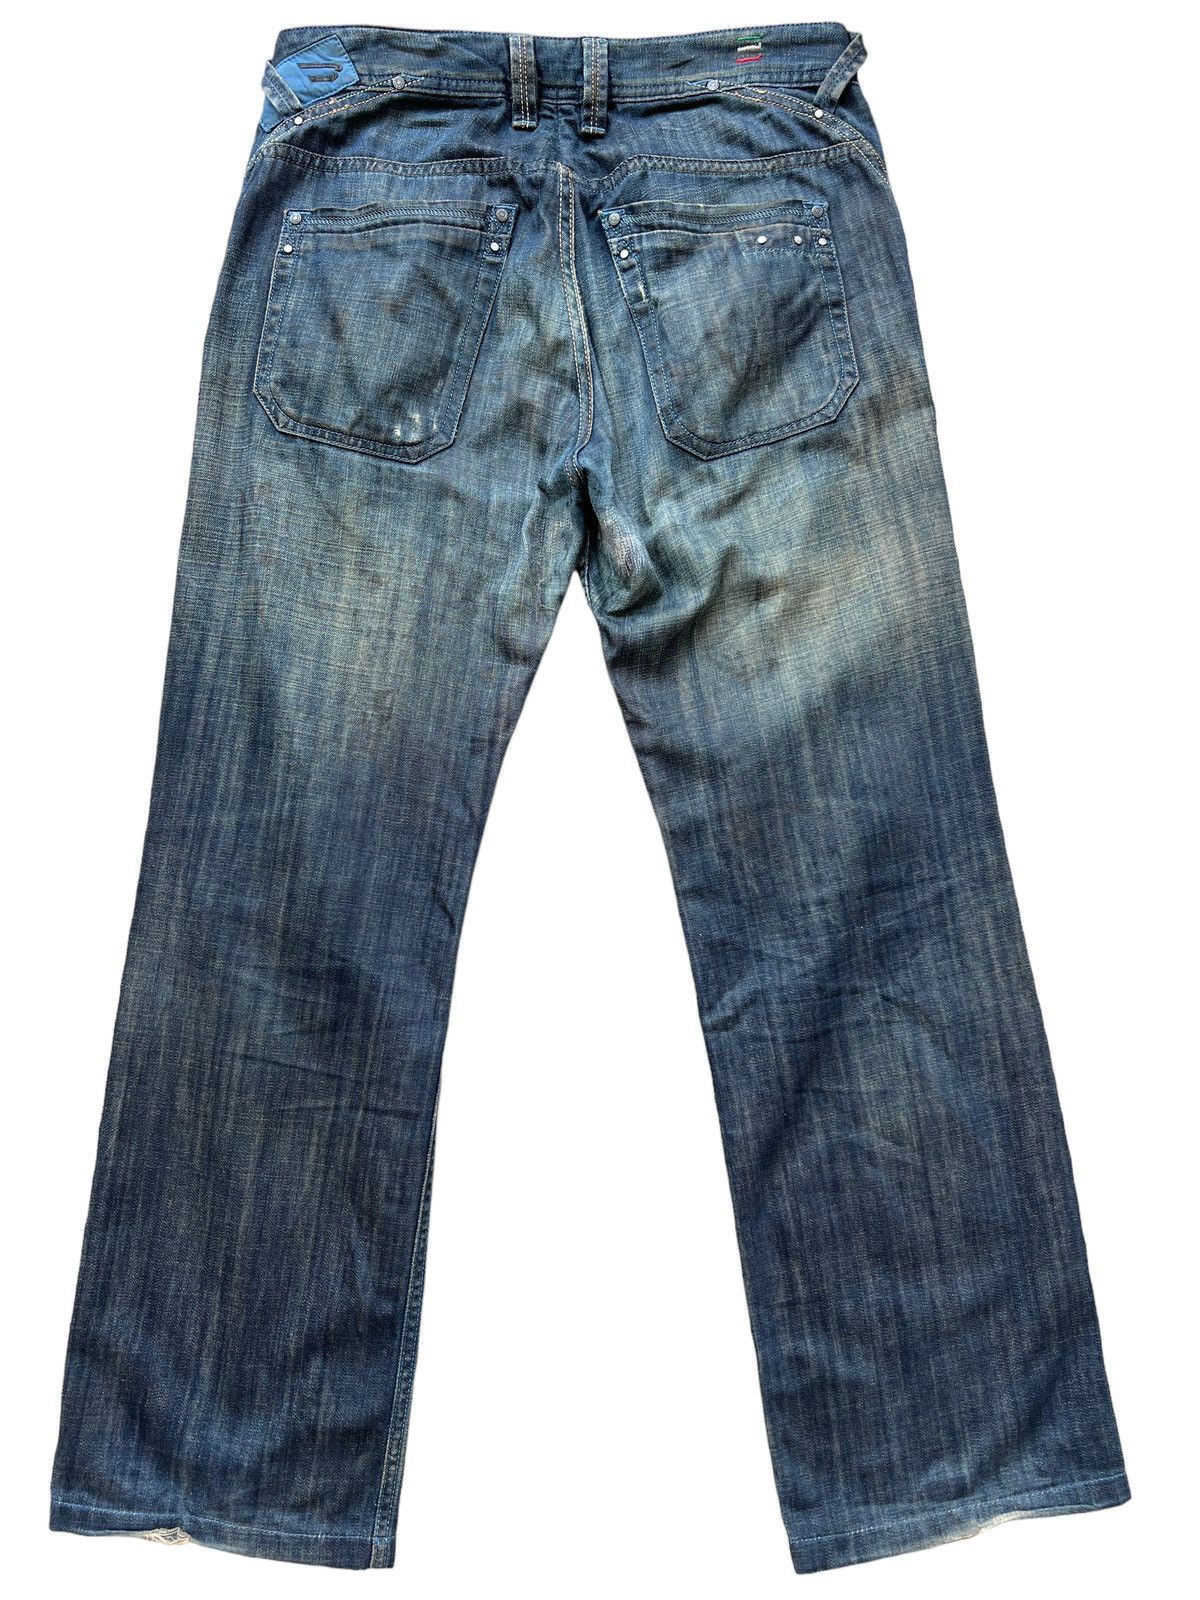 Vintage Diesel Industry Distressed Denim Jeans 34x30 - 3